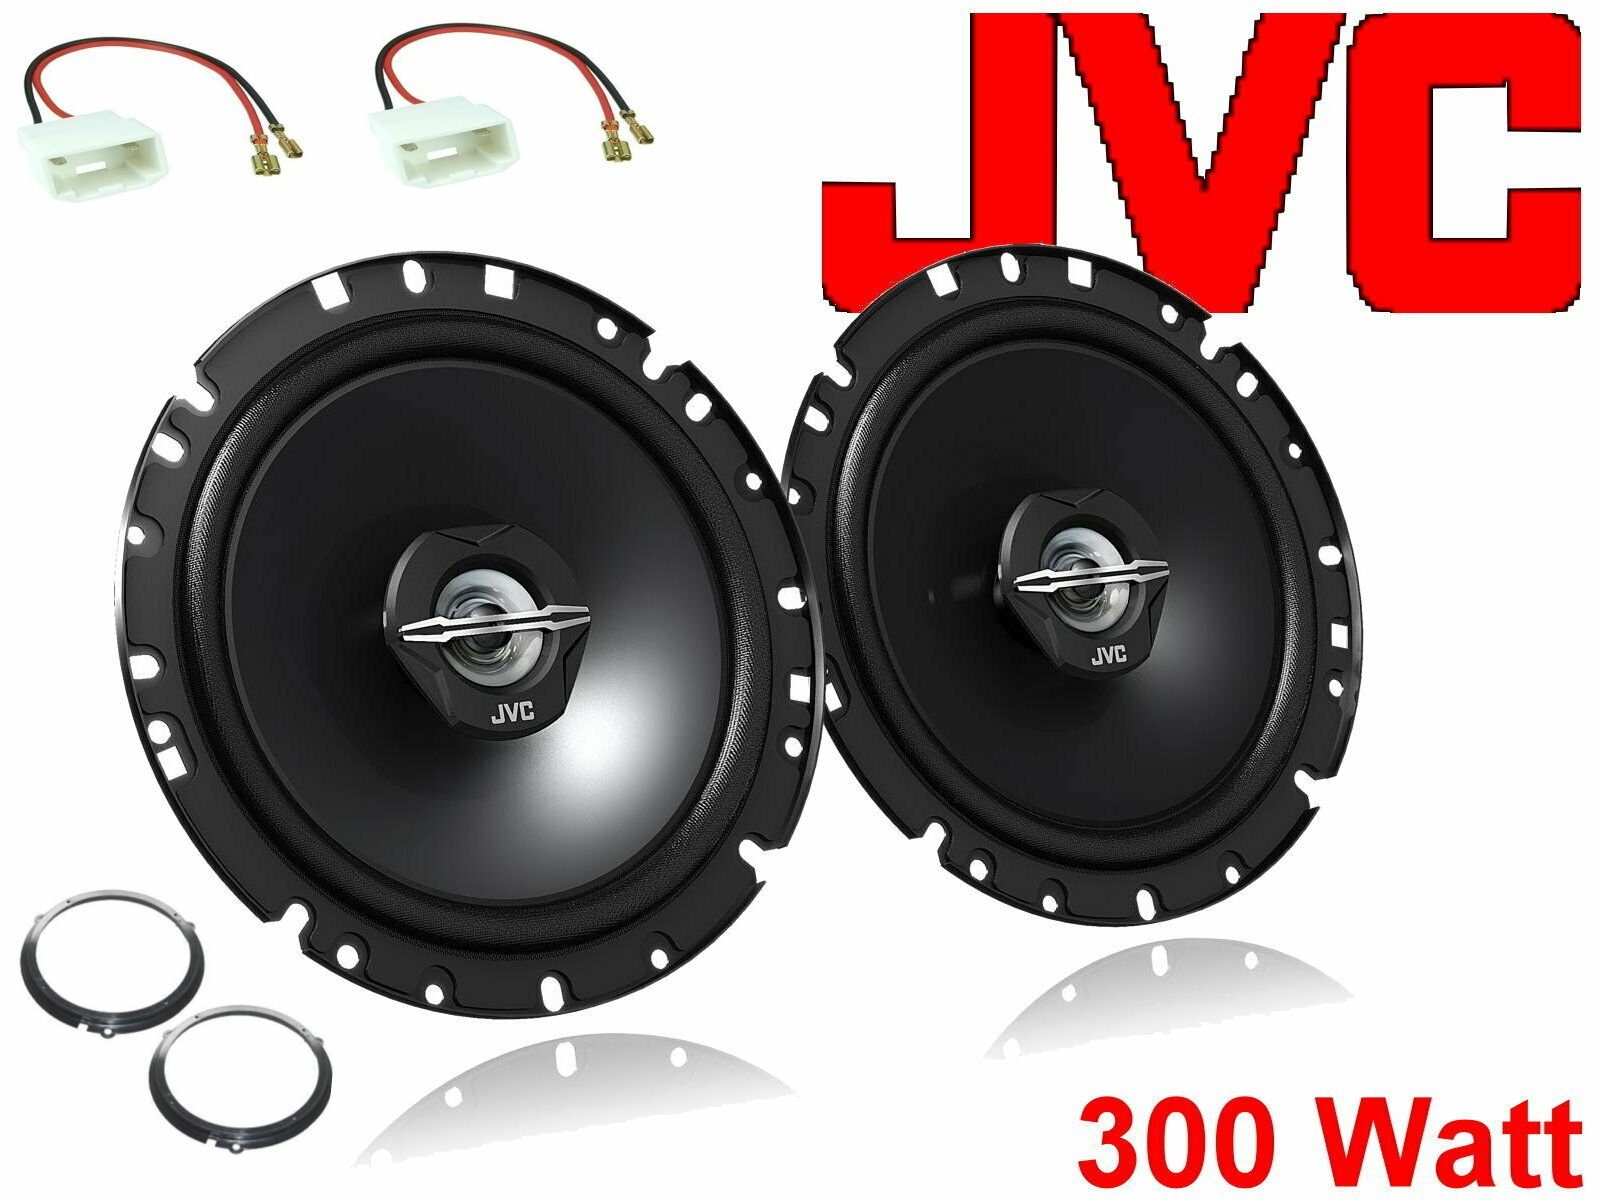 DSX JVC passend für Ford Fiesta JA8 Bj 08/08-12 Lauts Auto-Lautsprecher (30 W) | Auto-Lautsprecher